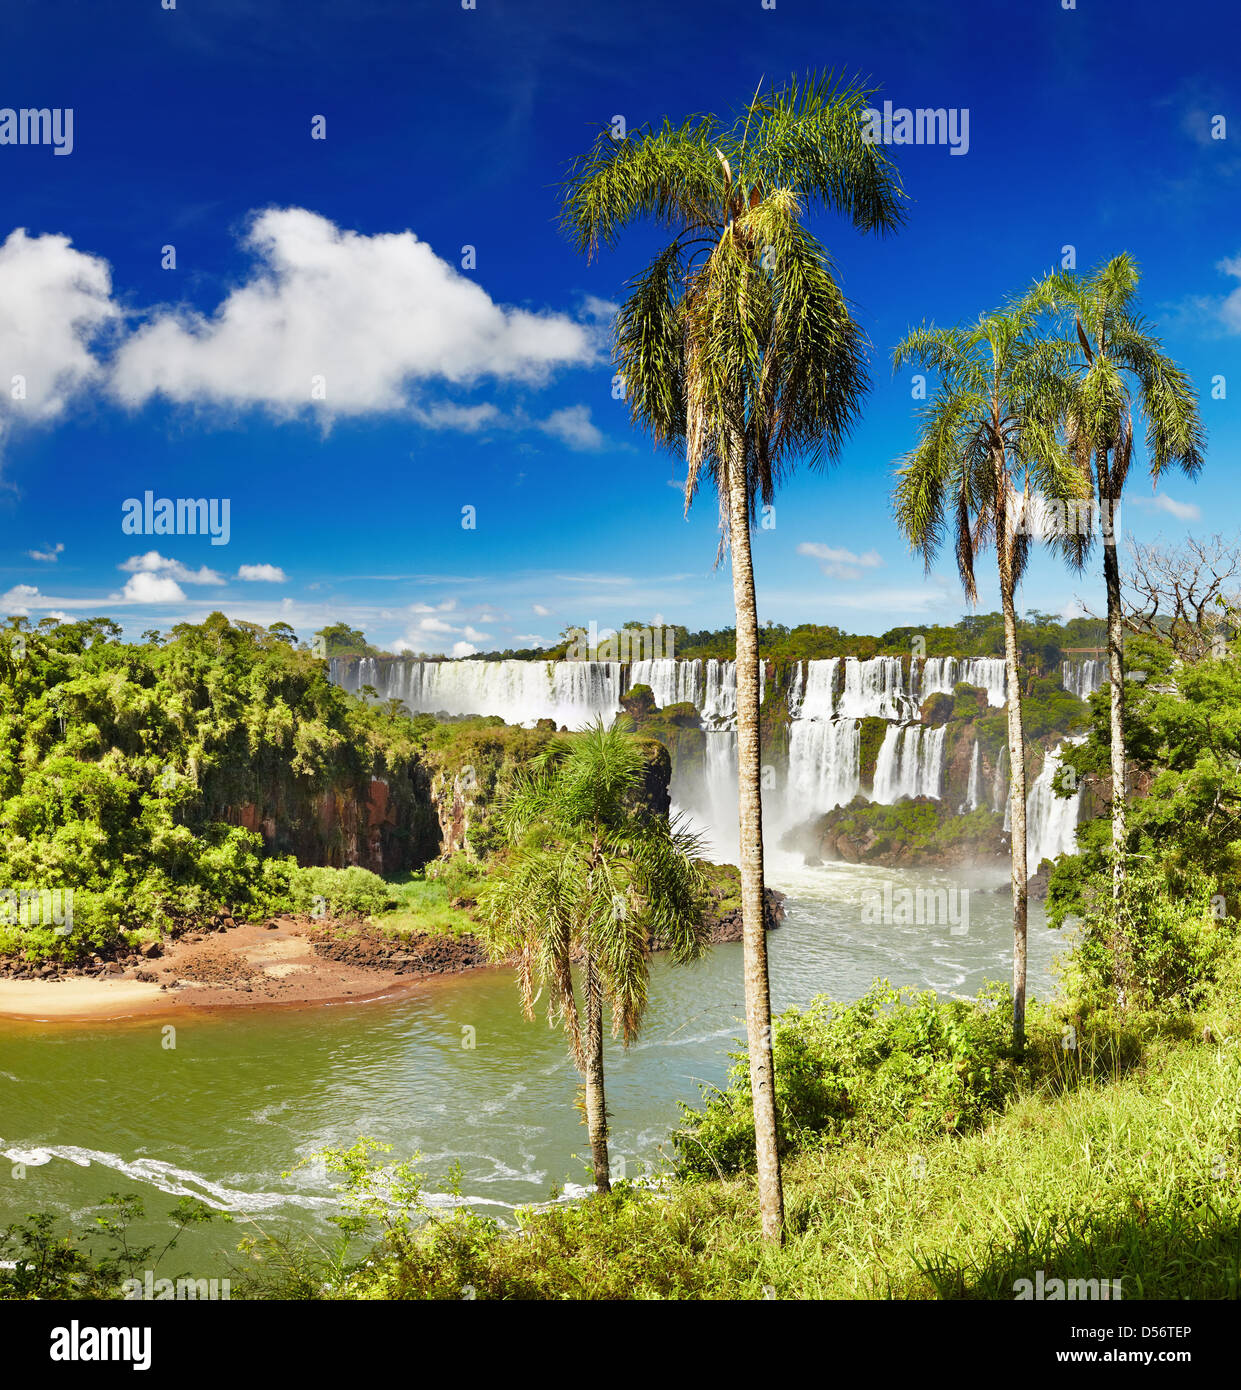 Las Cataratas de Iguazú, el mayor conjunto de cataratas del mundo, situado en la frontera con Argentina y Brasil Foto de stock